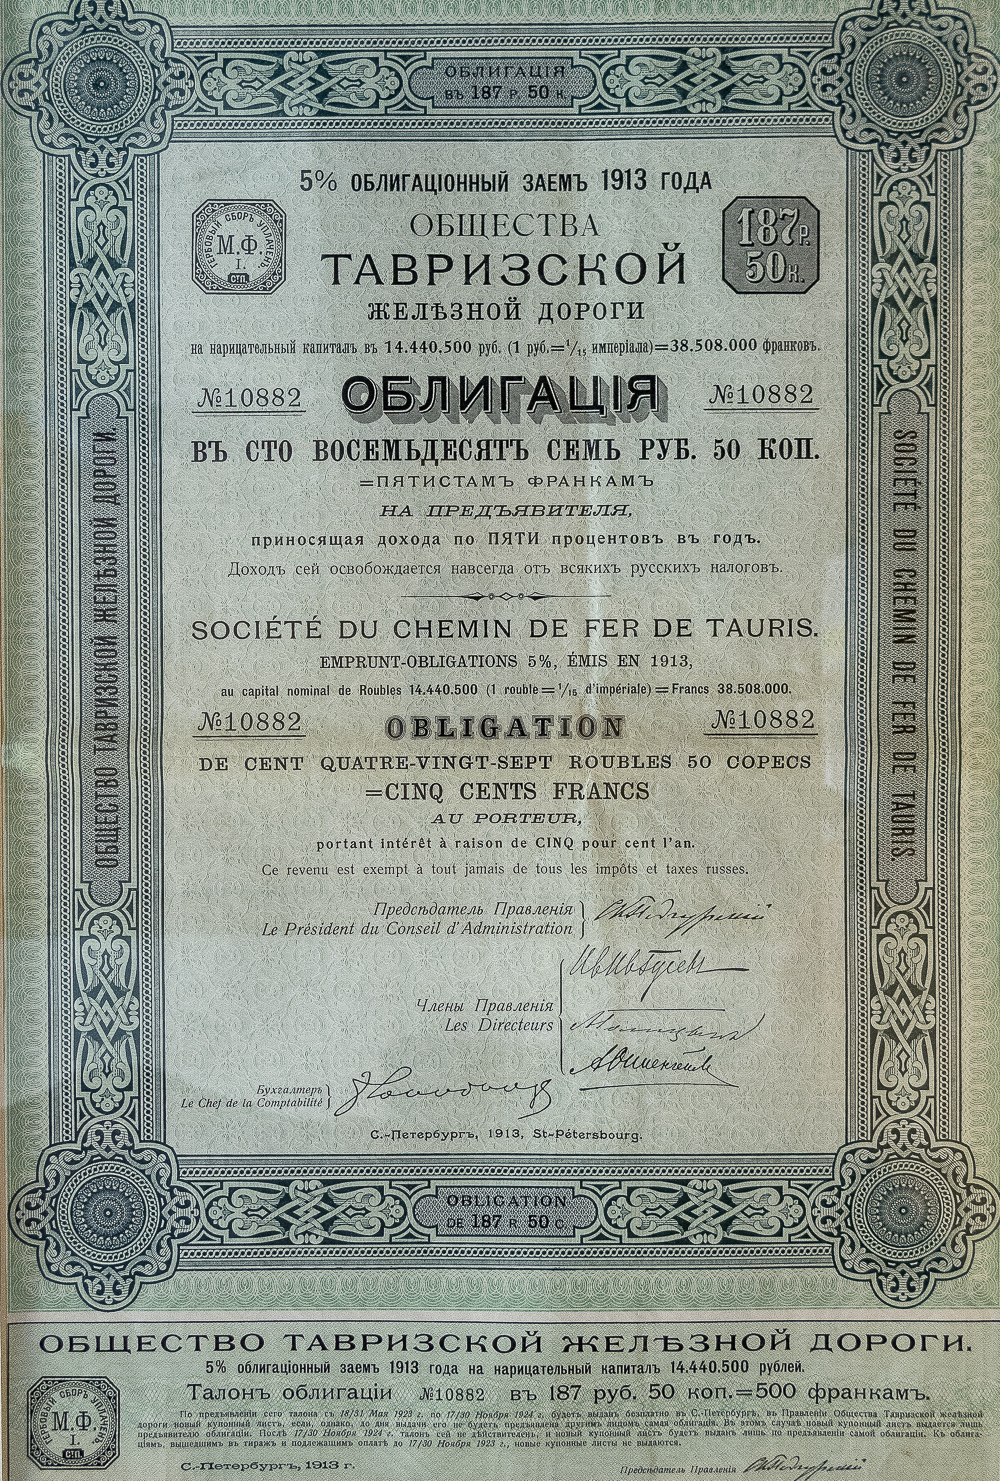 Облигация в 187 рублей 50 копеек общества Тавривзской железной дороги